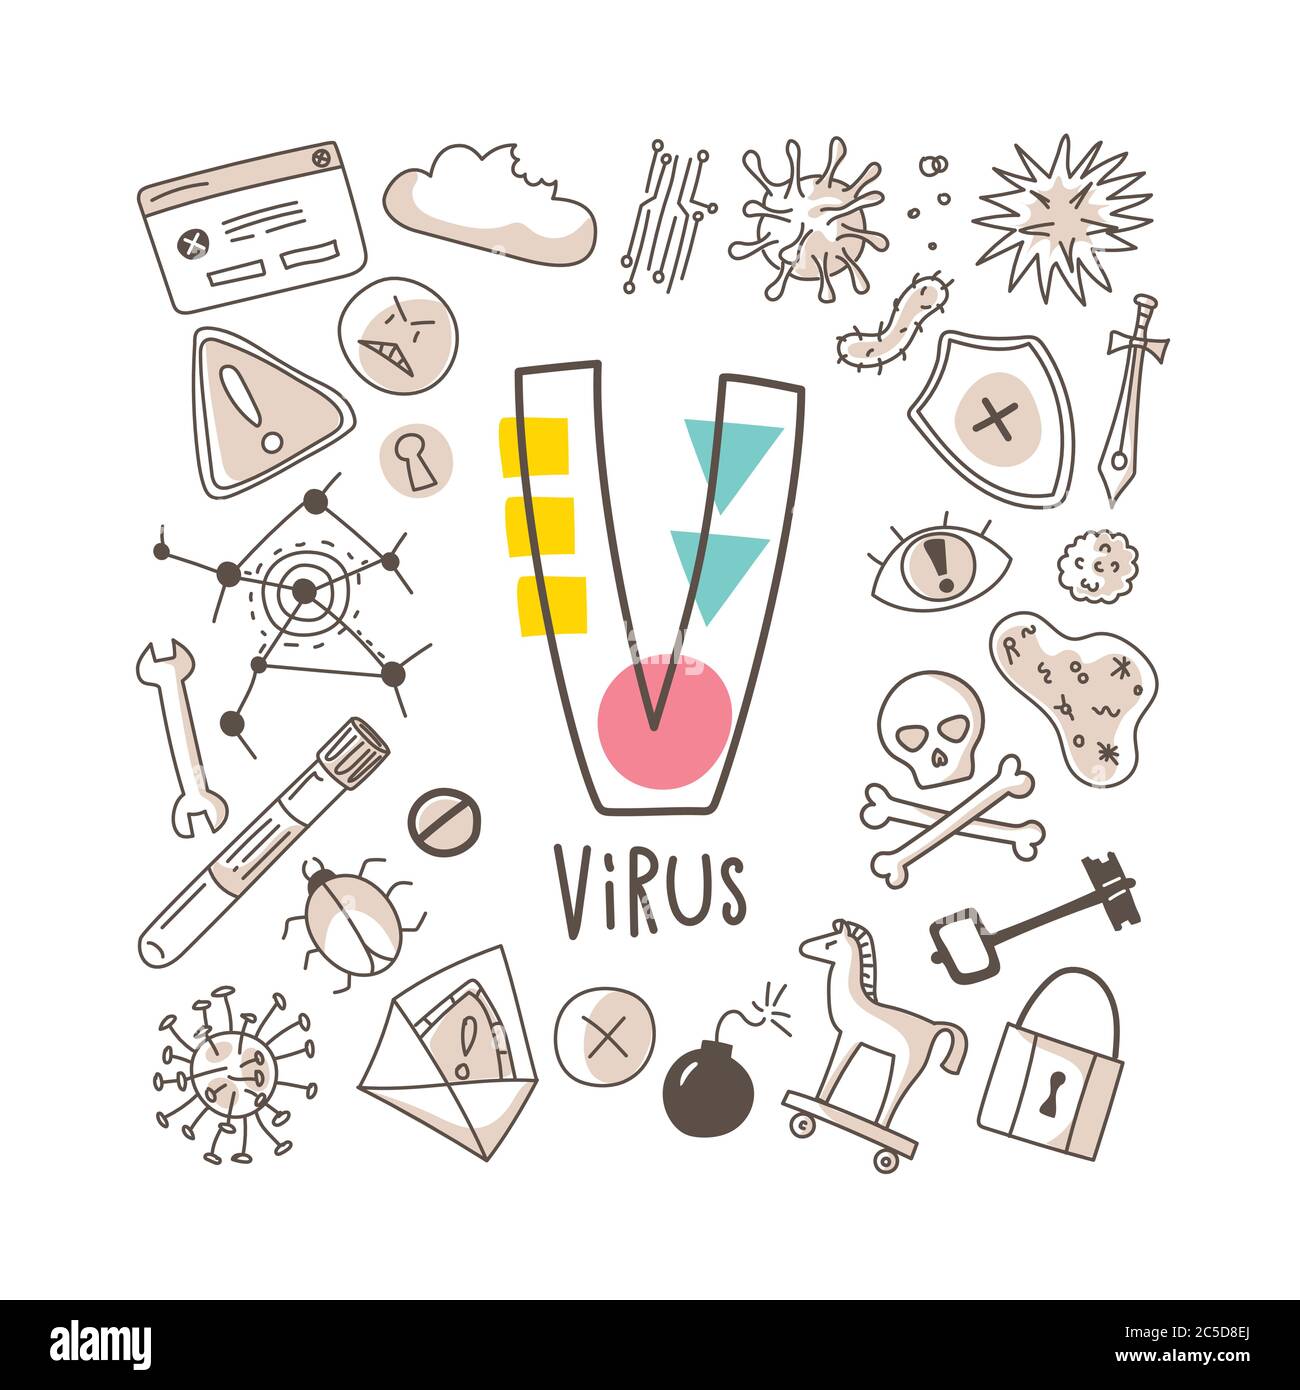 Letra V - virus, serie de letras lindas en estilo de fideos, ilustración vectorial Ilustración del Vector